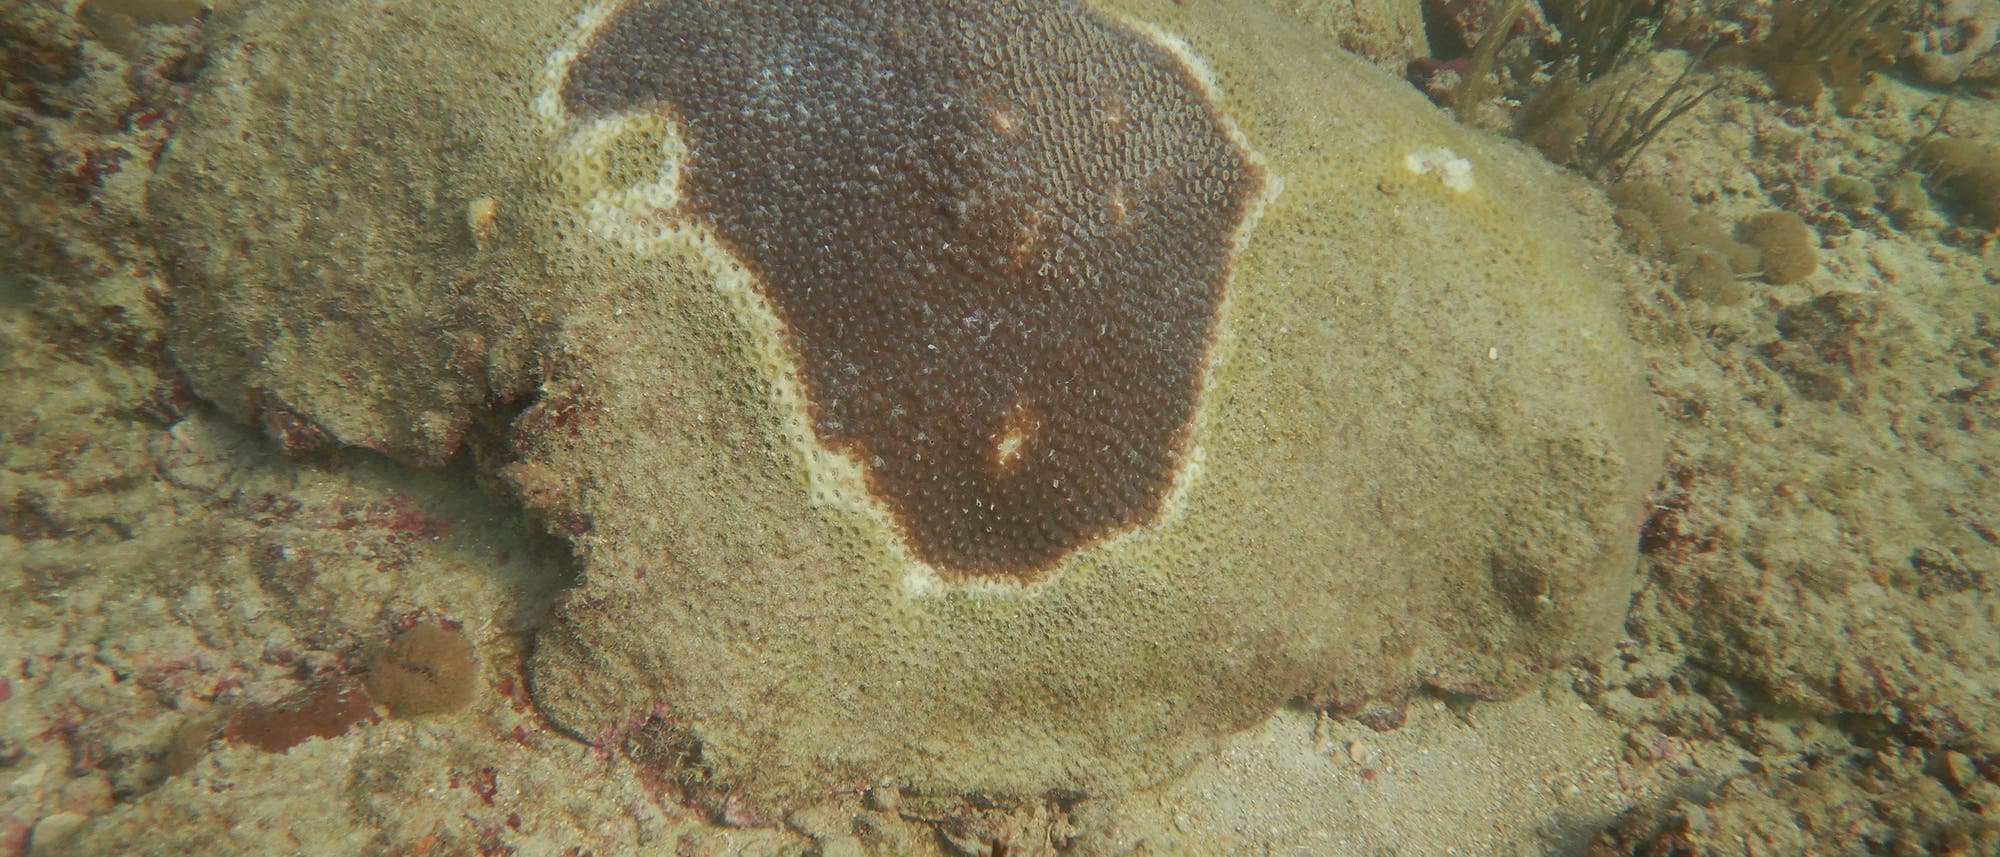 von der stony coral tissue loss disease betroffene Koralle